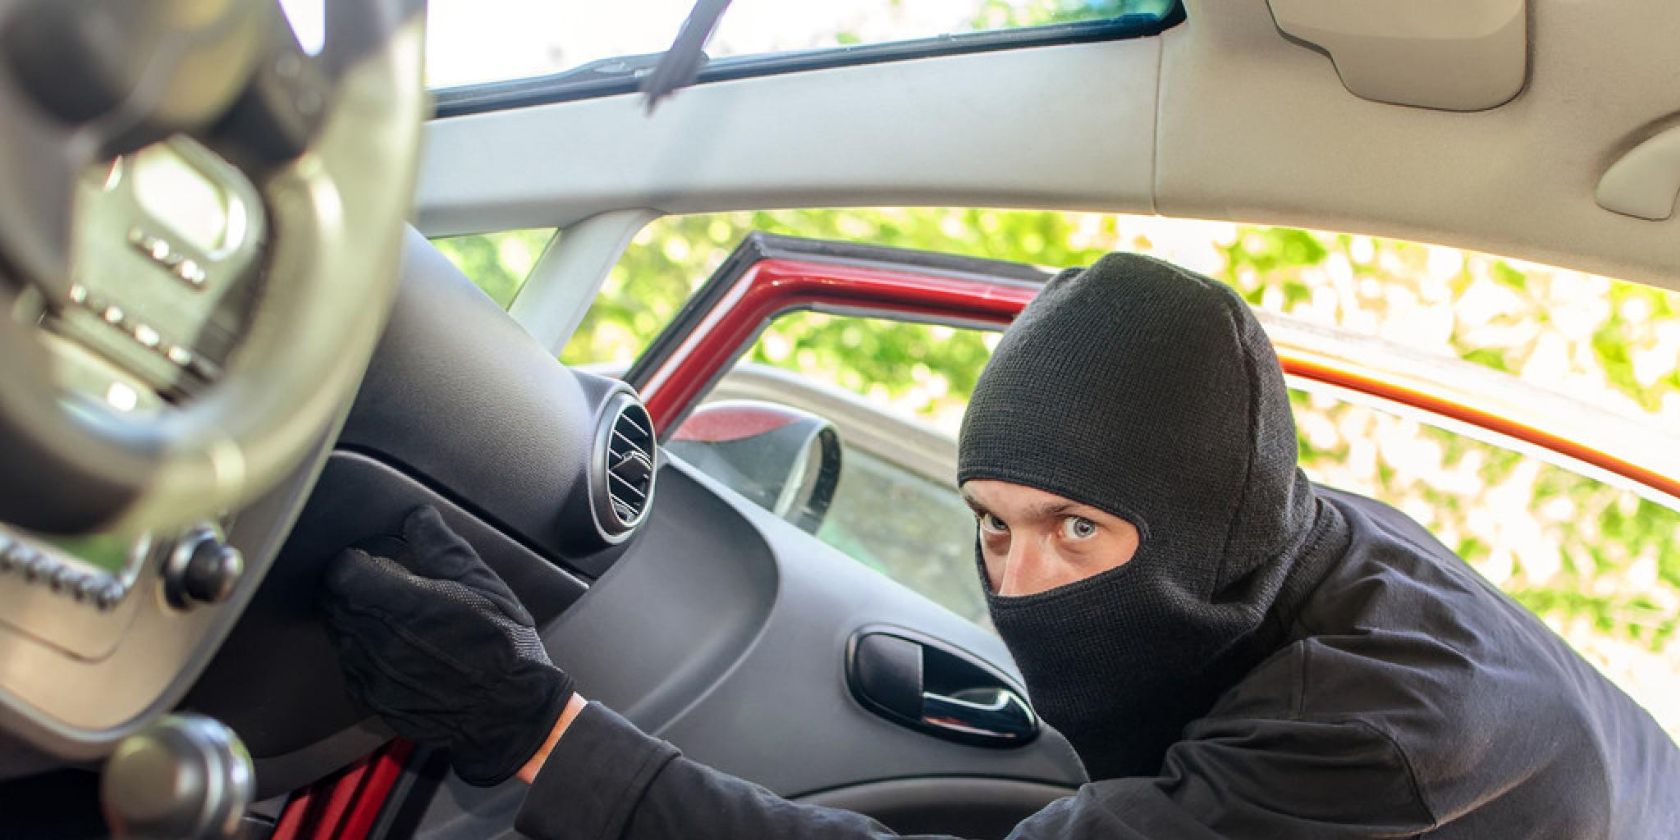 A car thief is accessing a car